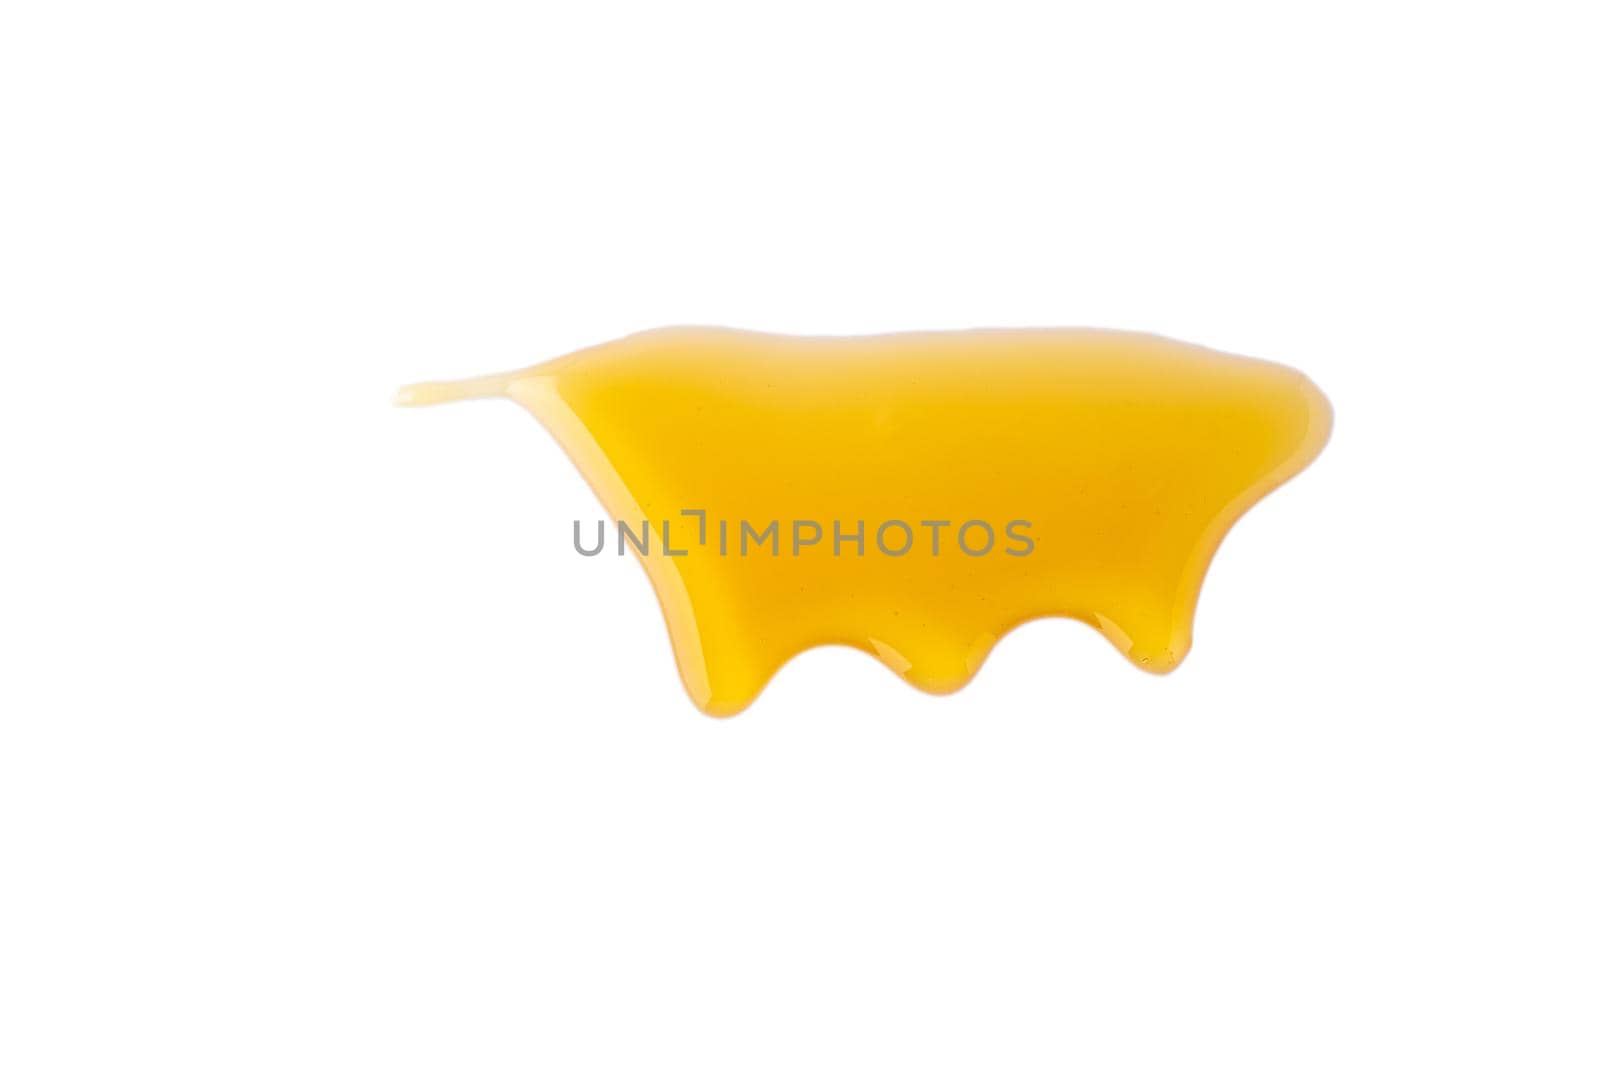 Isolated gold honey melting on white background. Sticky yellow dense liquid flowing. Horizontal by NataBene